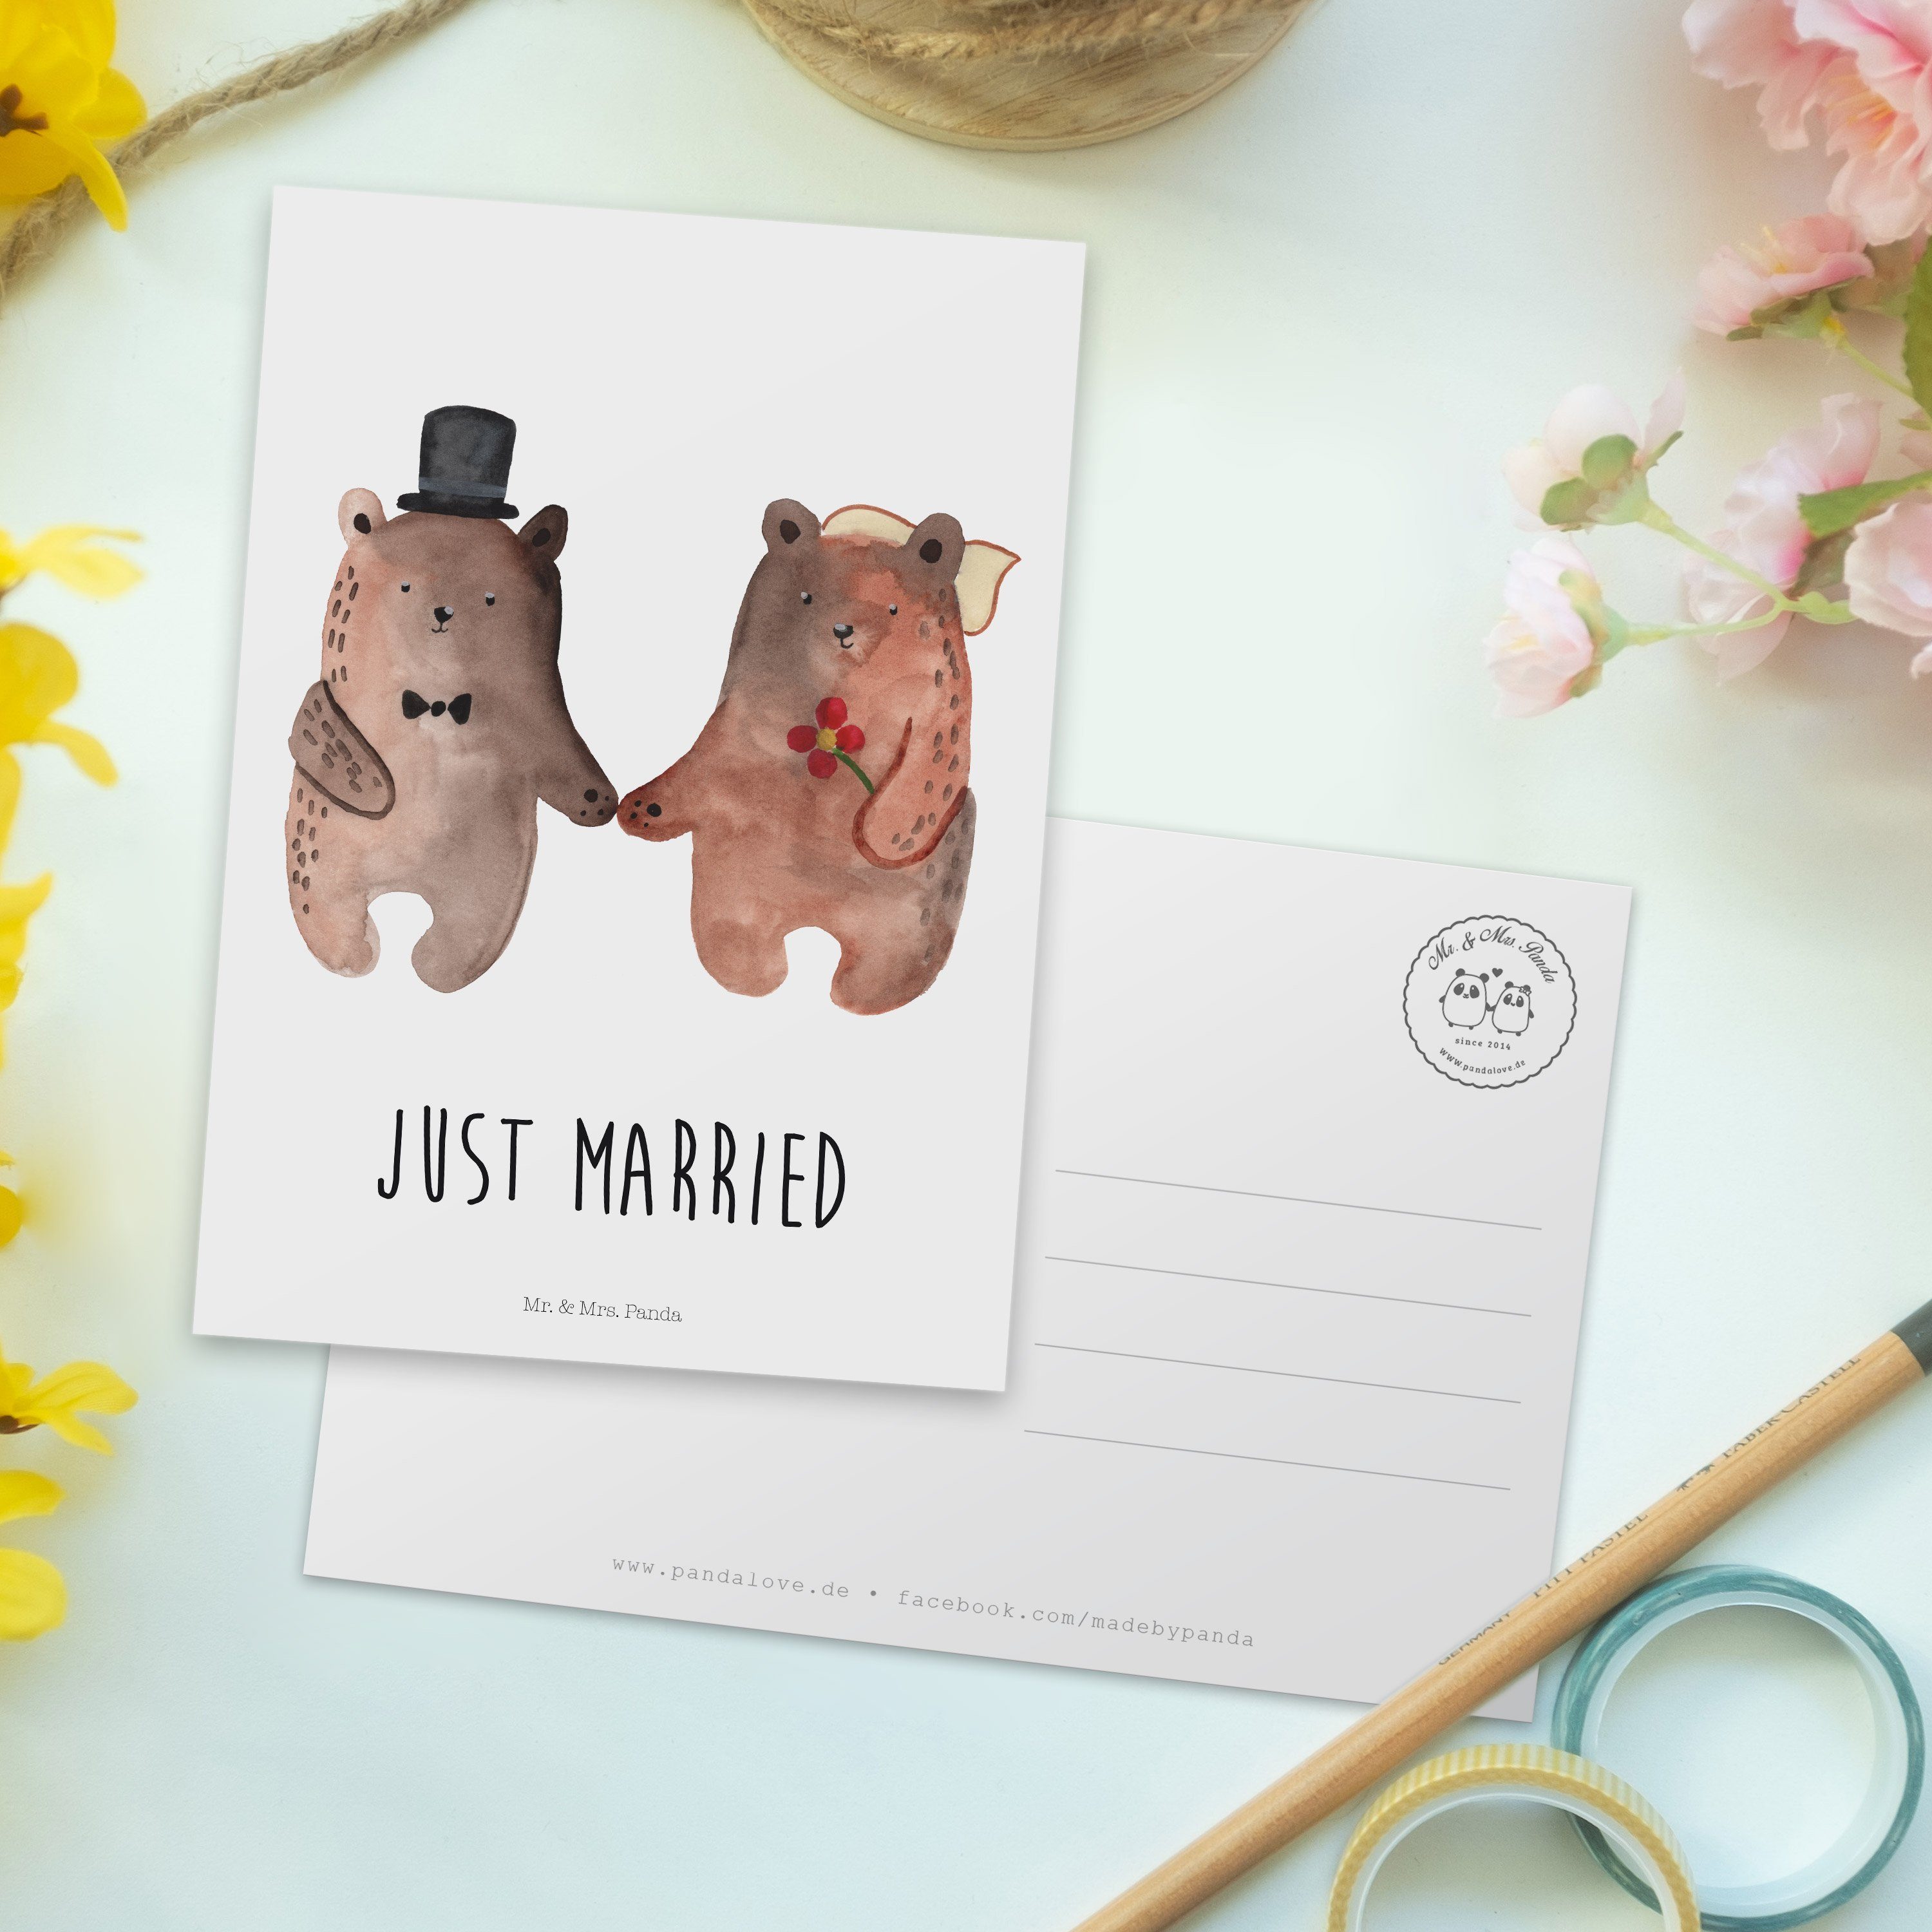 Mr. & Heirate Weiß Geschenk, Panda Heirat Heirat - Verheiratet Hochzeit - Postkarte Bär Bär Mrs